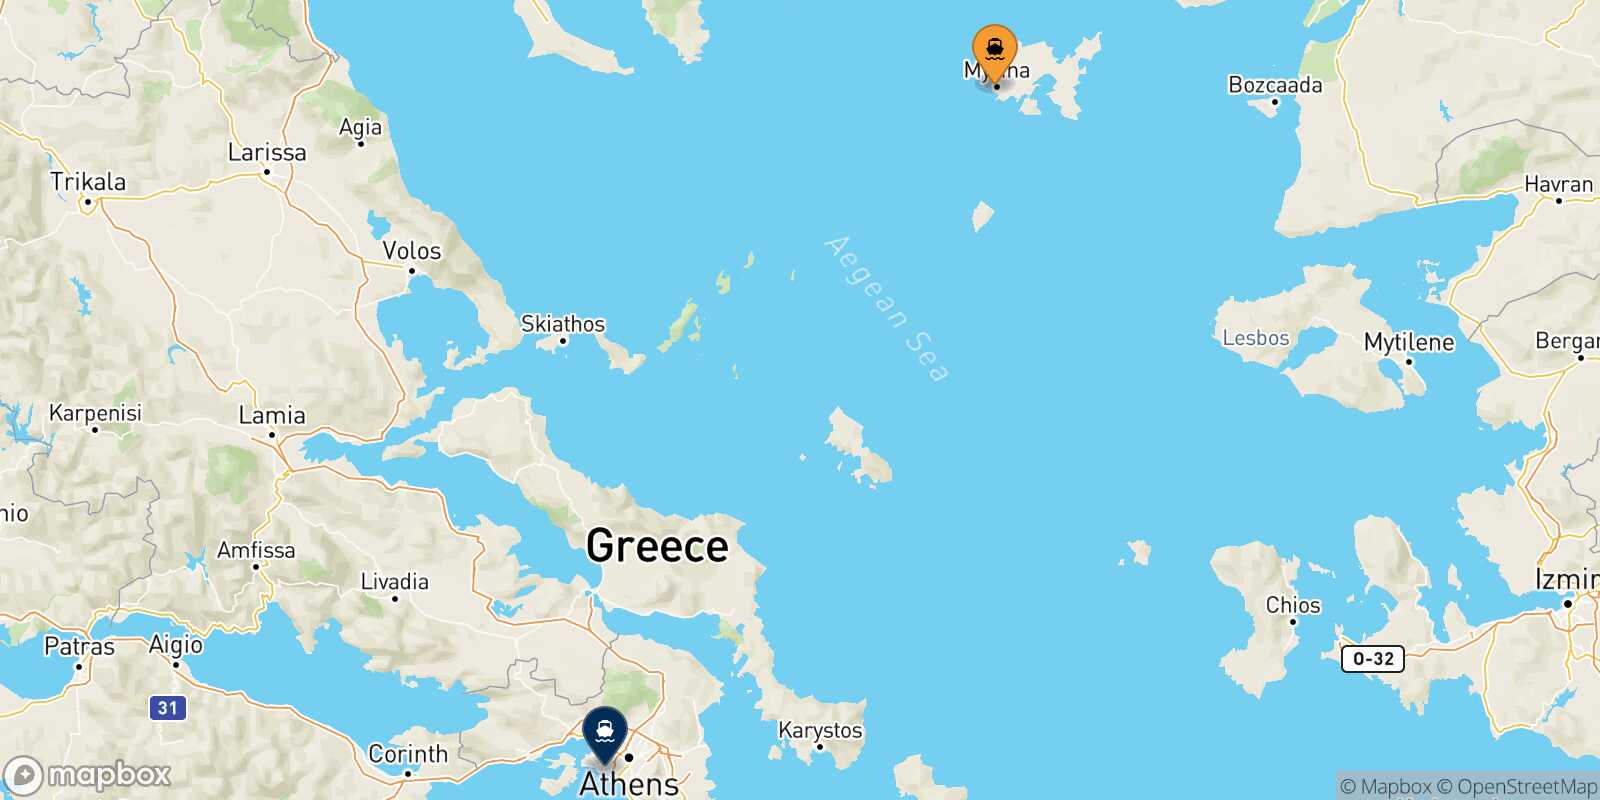 Myrina (Limnos) Piraeus route map